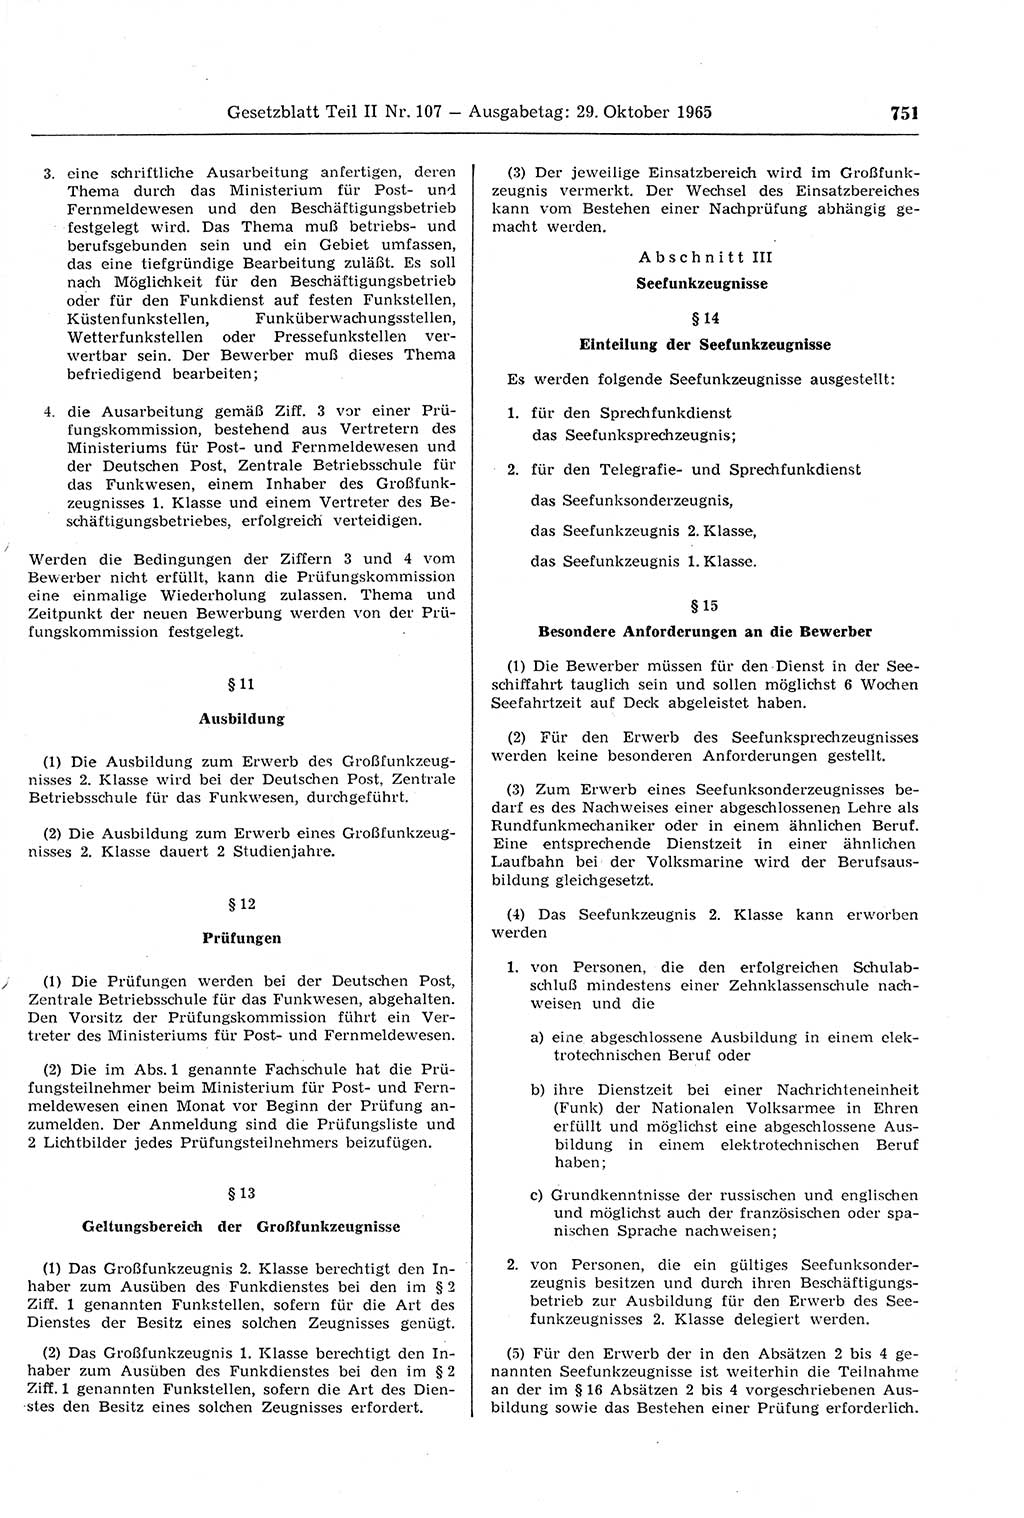 Gesetzblatt (GBl.) der Deutschen Demokratischen Republik (DDR) Teil ⅠⅠ 1965, Seite 751 (GBl. DDR ⅠⅠ 1965, S. 751)